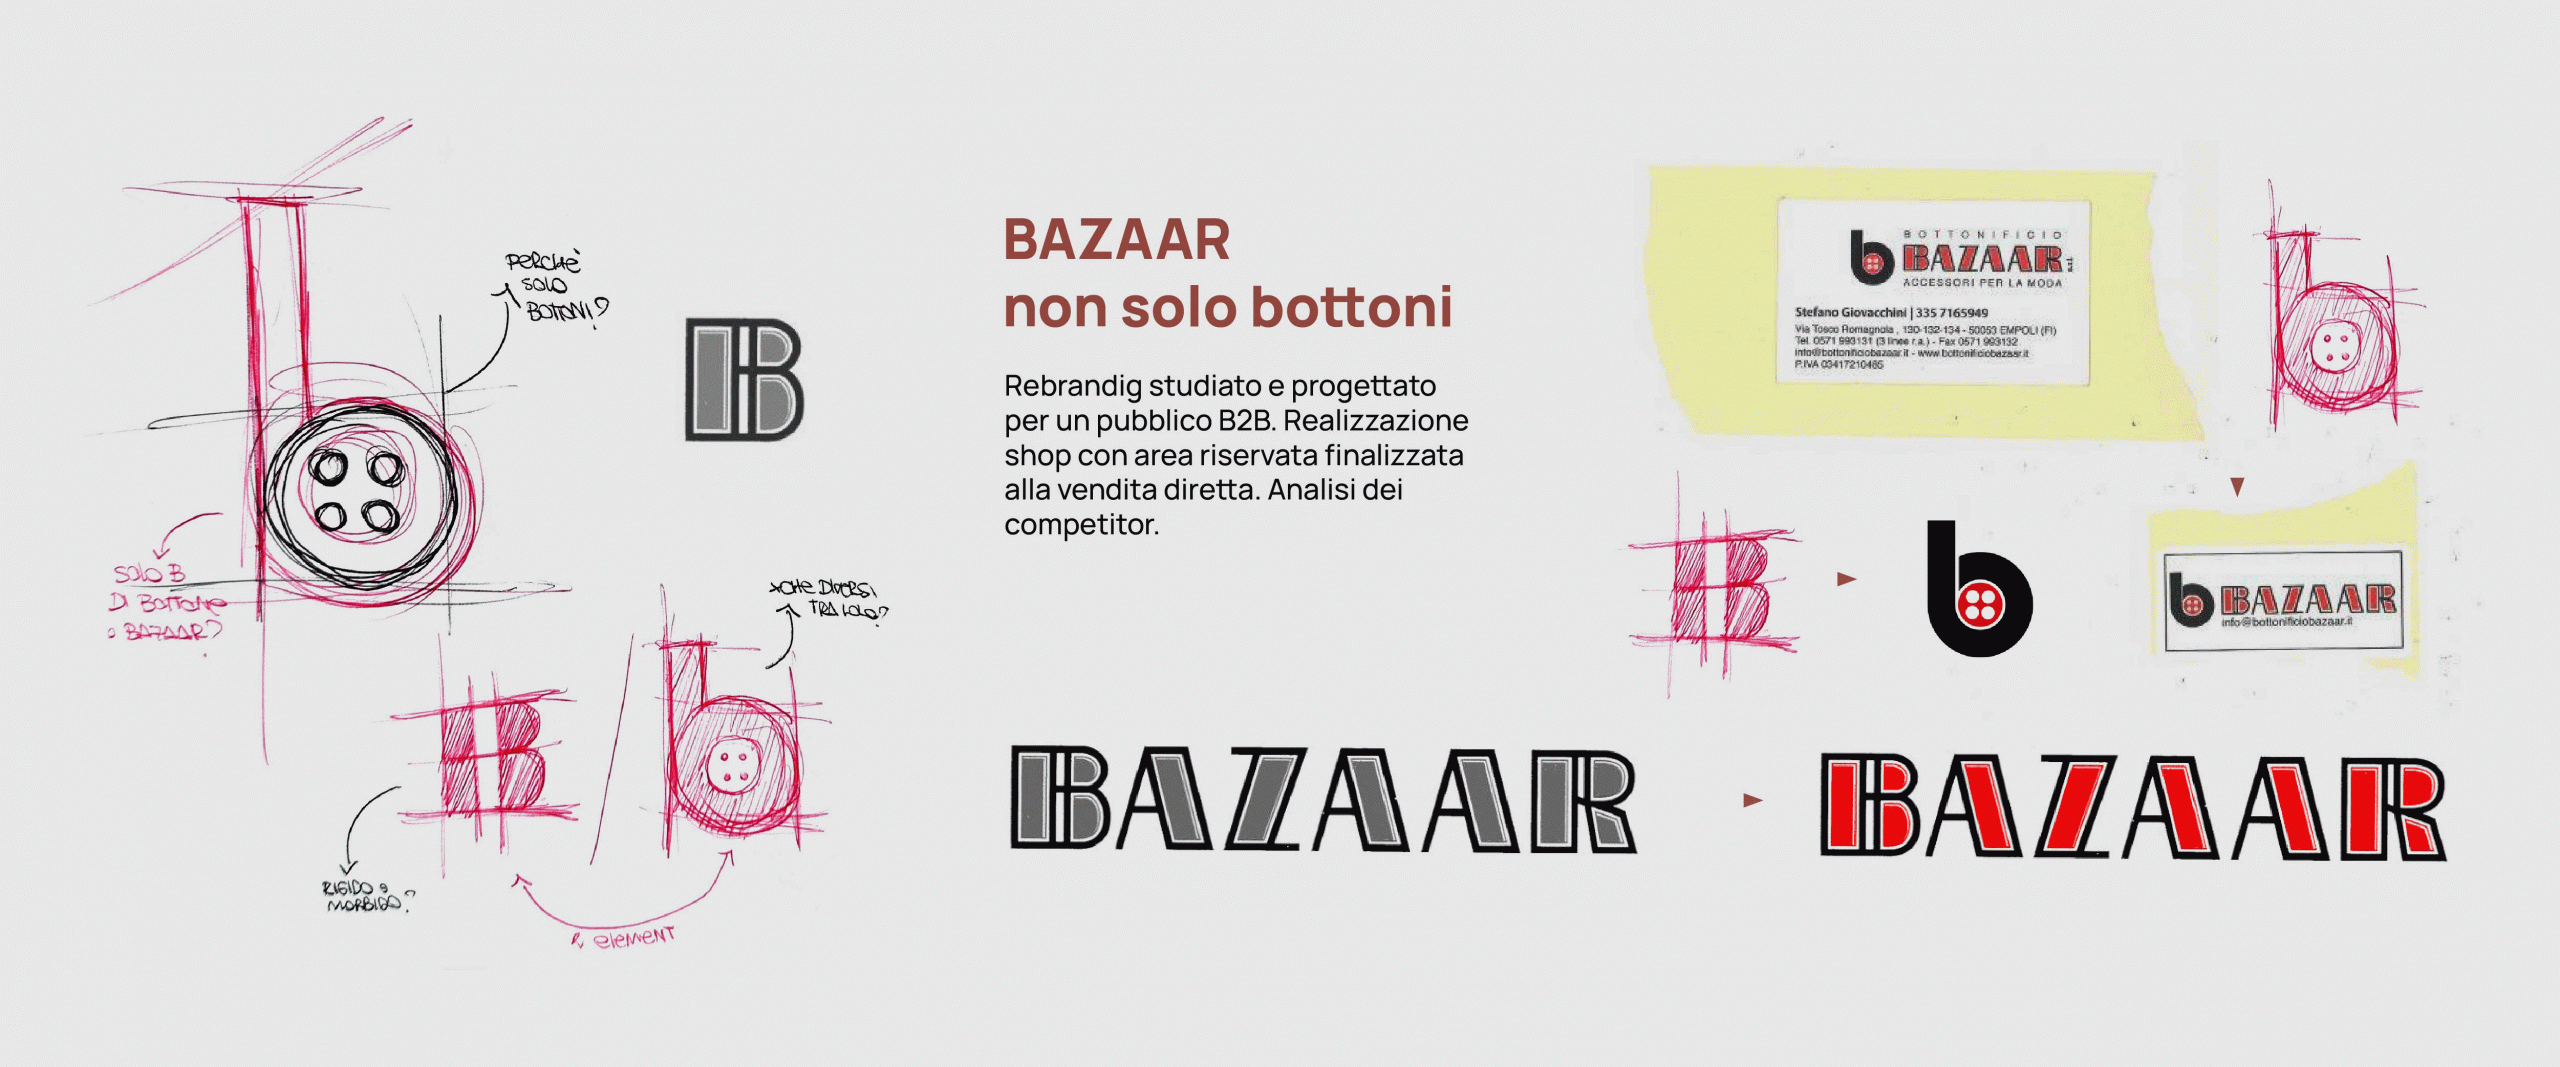 Logo Bazaar - Attico Rossini